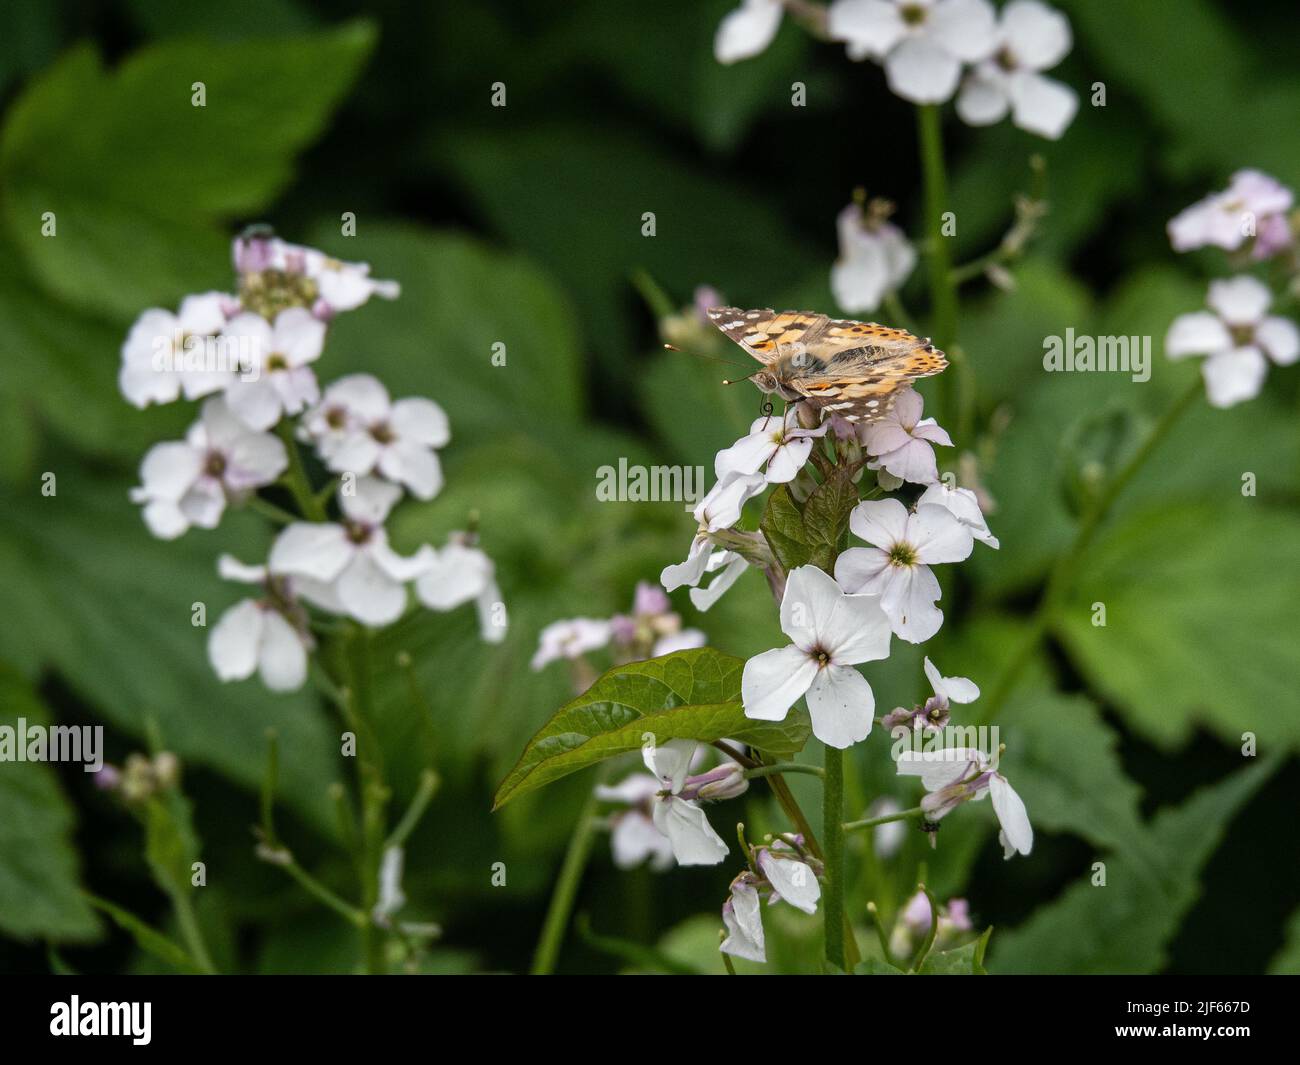 Una dama pintada (Vanessa cardui) buterfly alimentándose de una flor blanca de la honradez Foto de stock